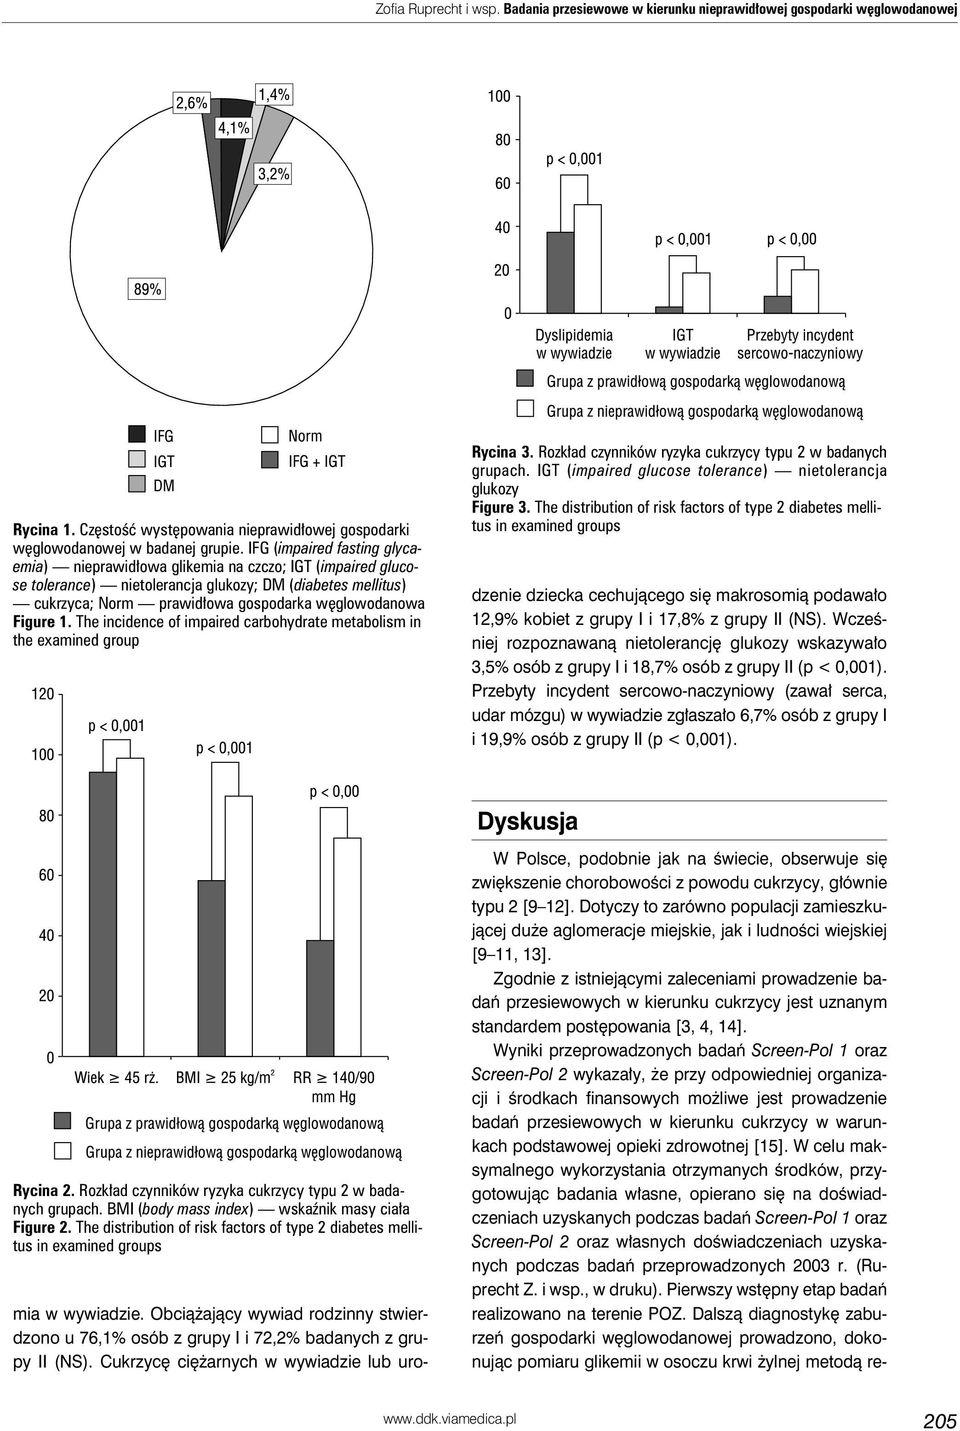 Figure 1. The incidence of impaired carbohydrate metabolism in the examined group Rycina 3. Rozkład czynników ryzyka cukrzycy typu 2 w badanych grupach.